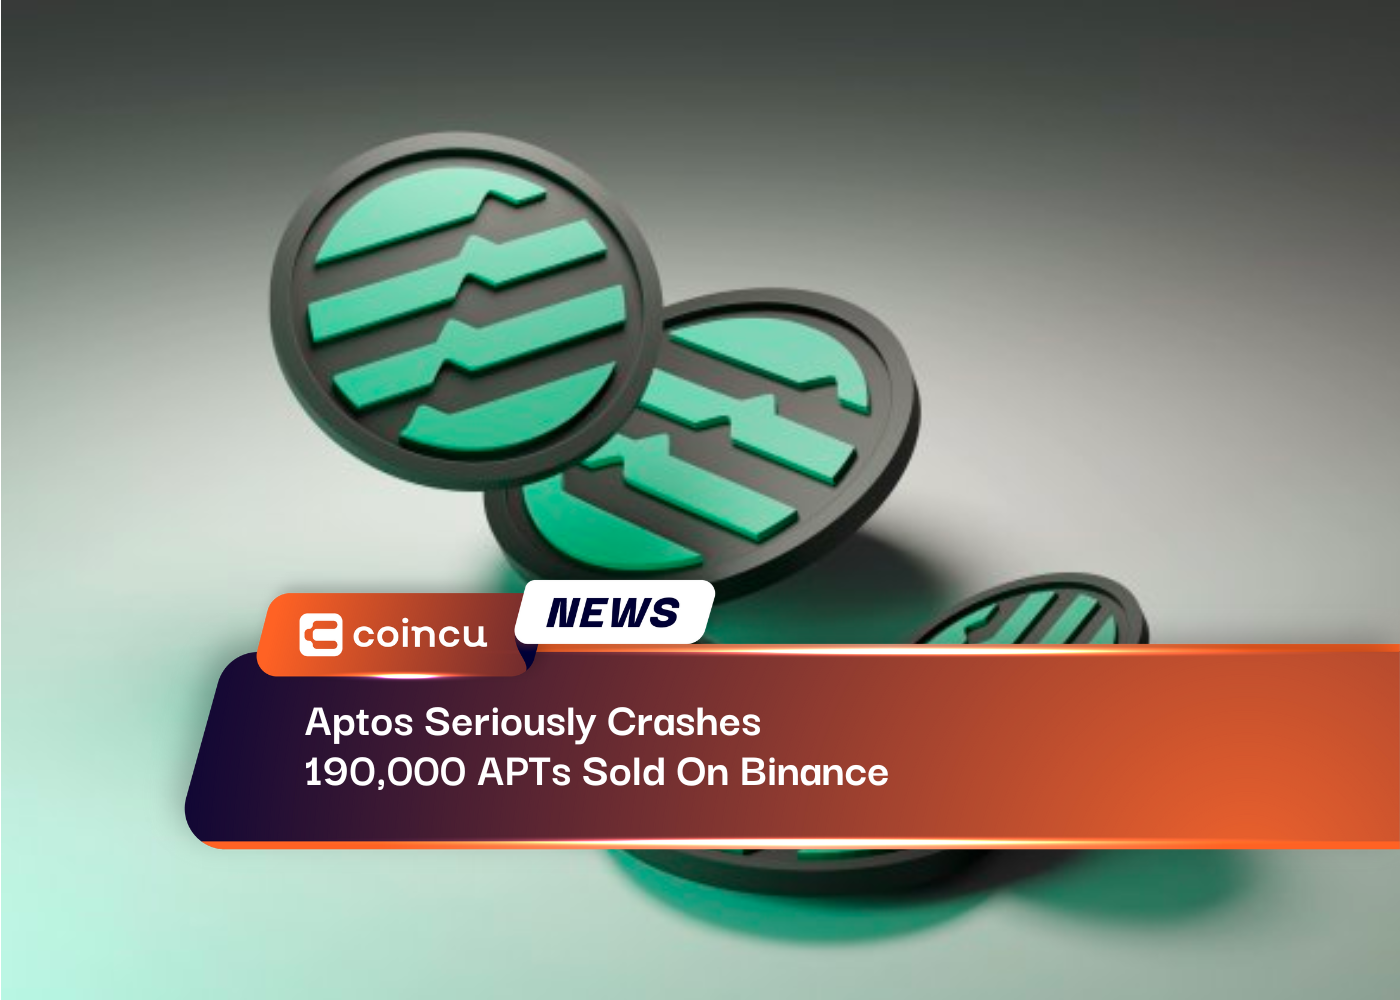 Aptos 严重崩溃了币安上出售的 190,000 个 APT